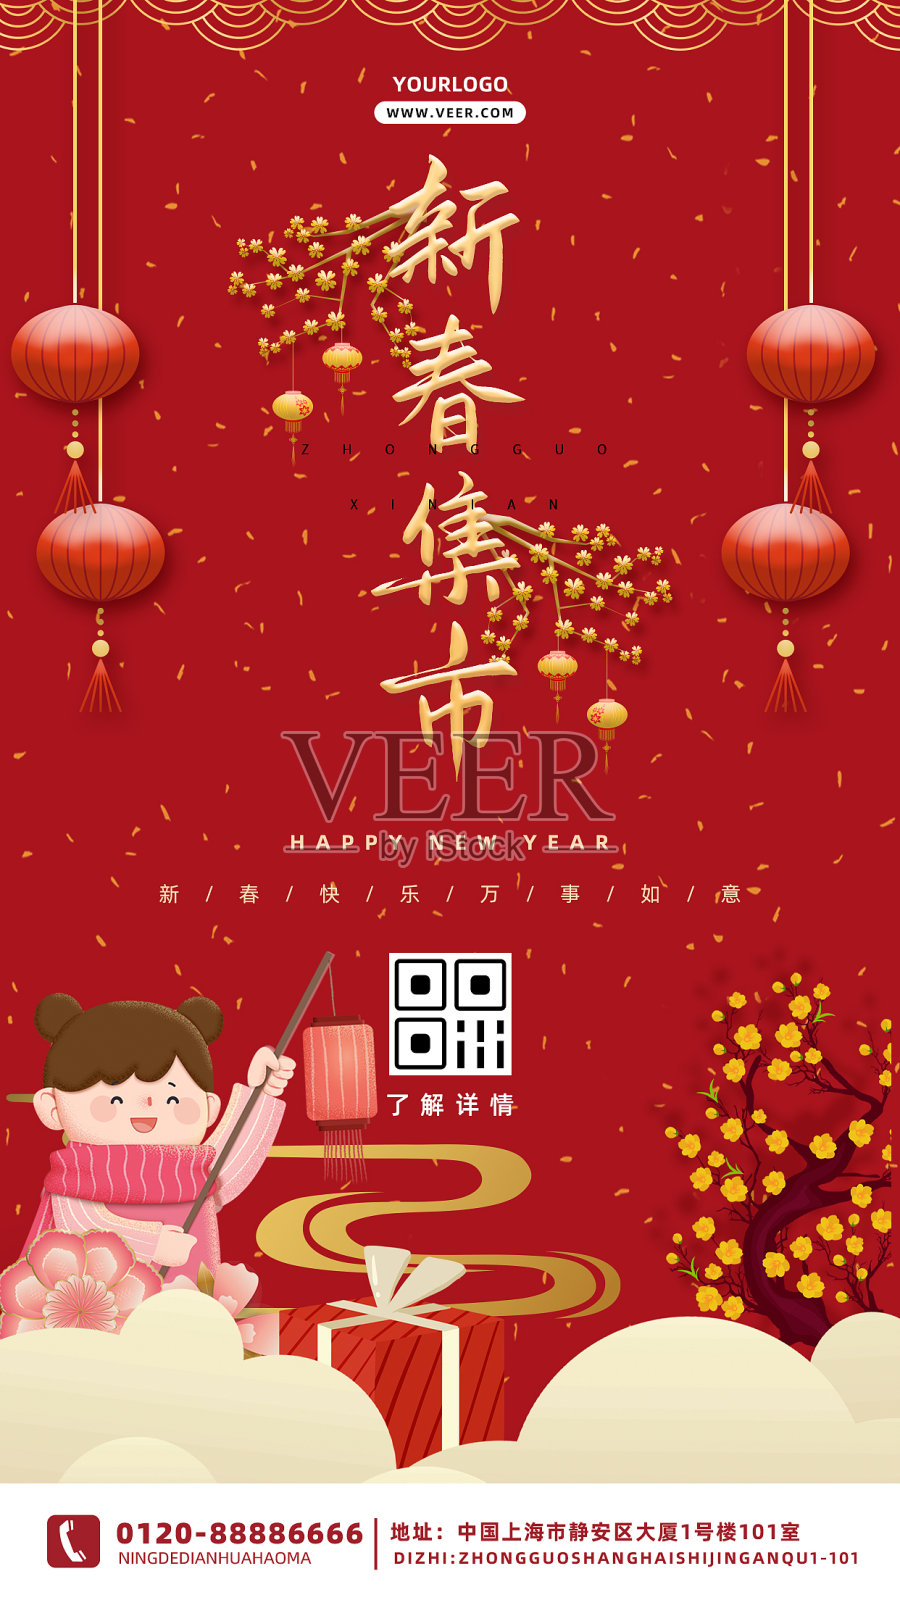 红色喜庆大气简约热闹年货节促销海报设计模板素材